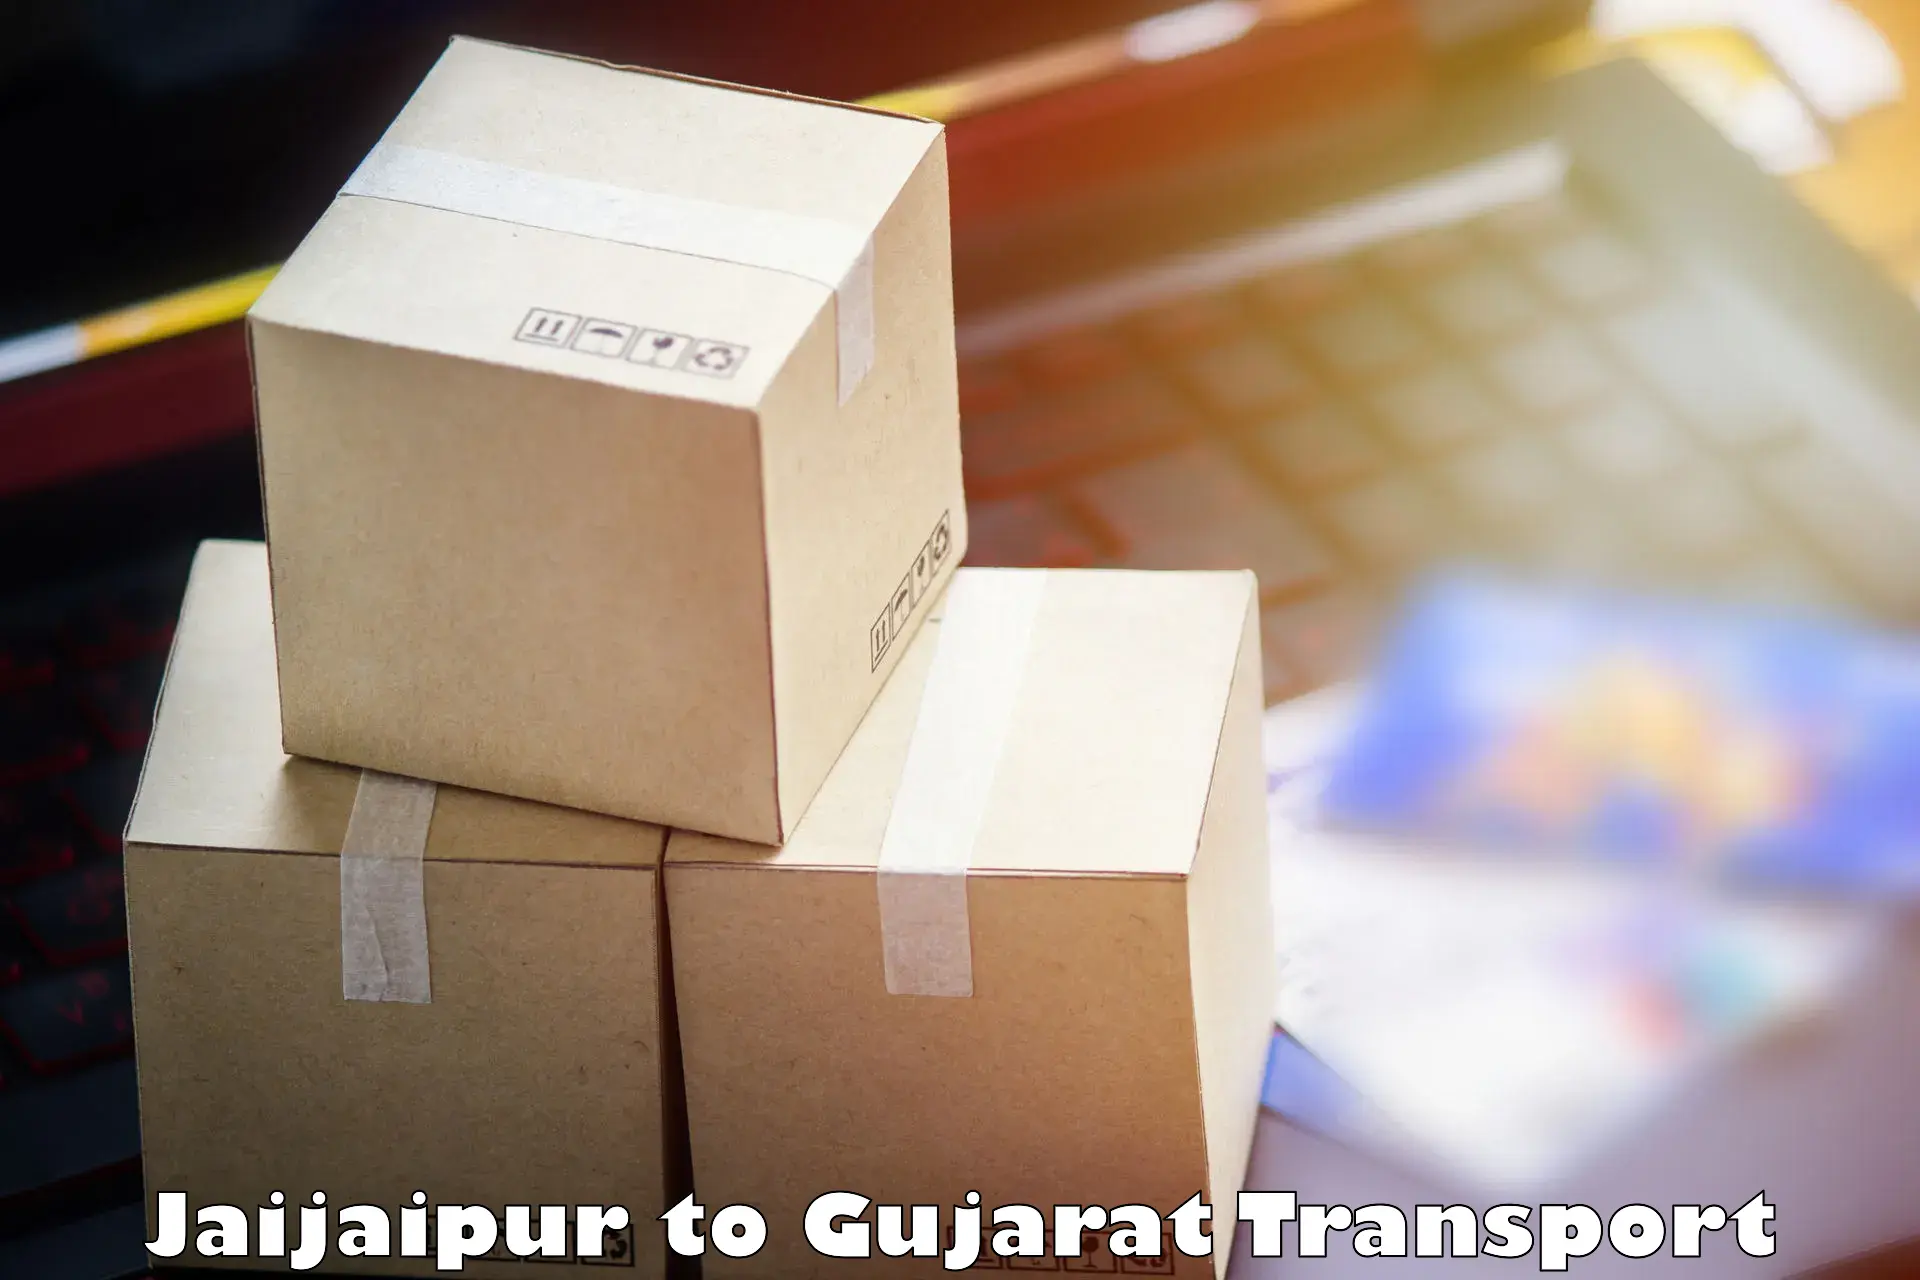 Pick up transport service Jaijaipur to Dang